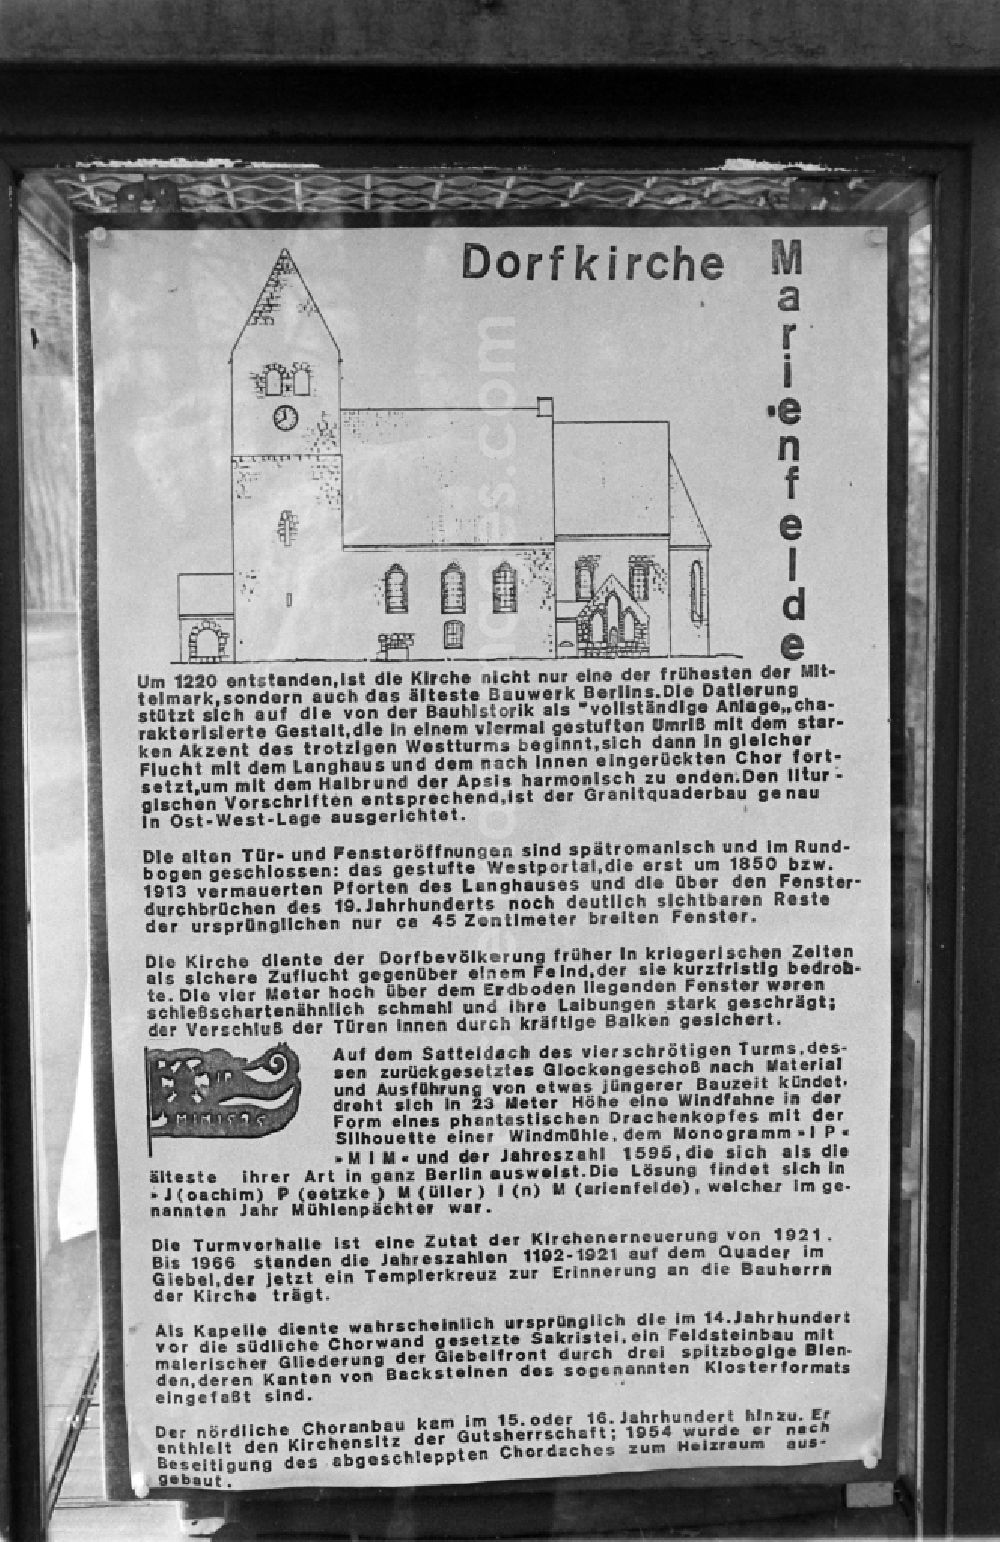 Berlin: Information board about the Marienfelde village church in Alt-Marienfelde in Berlin